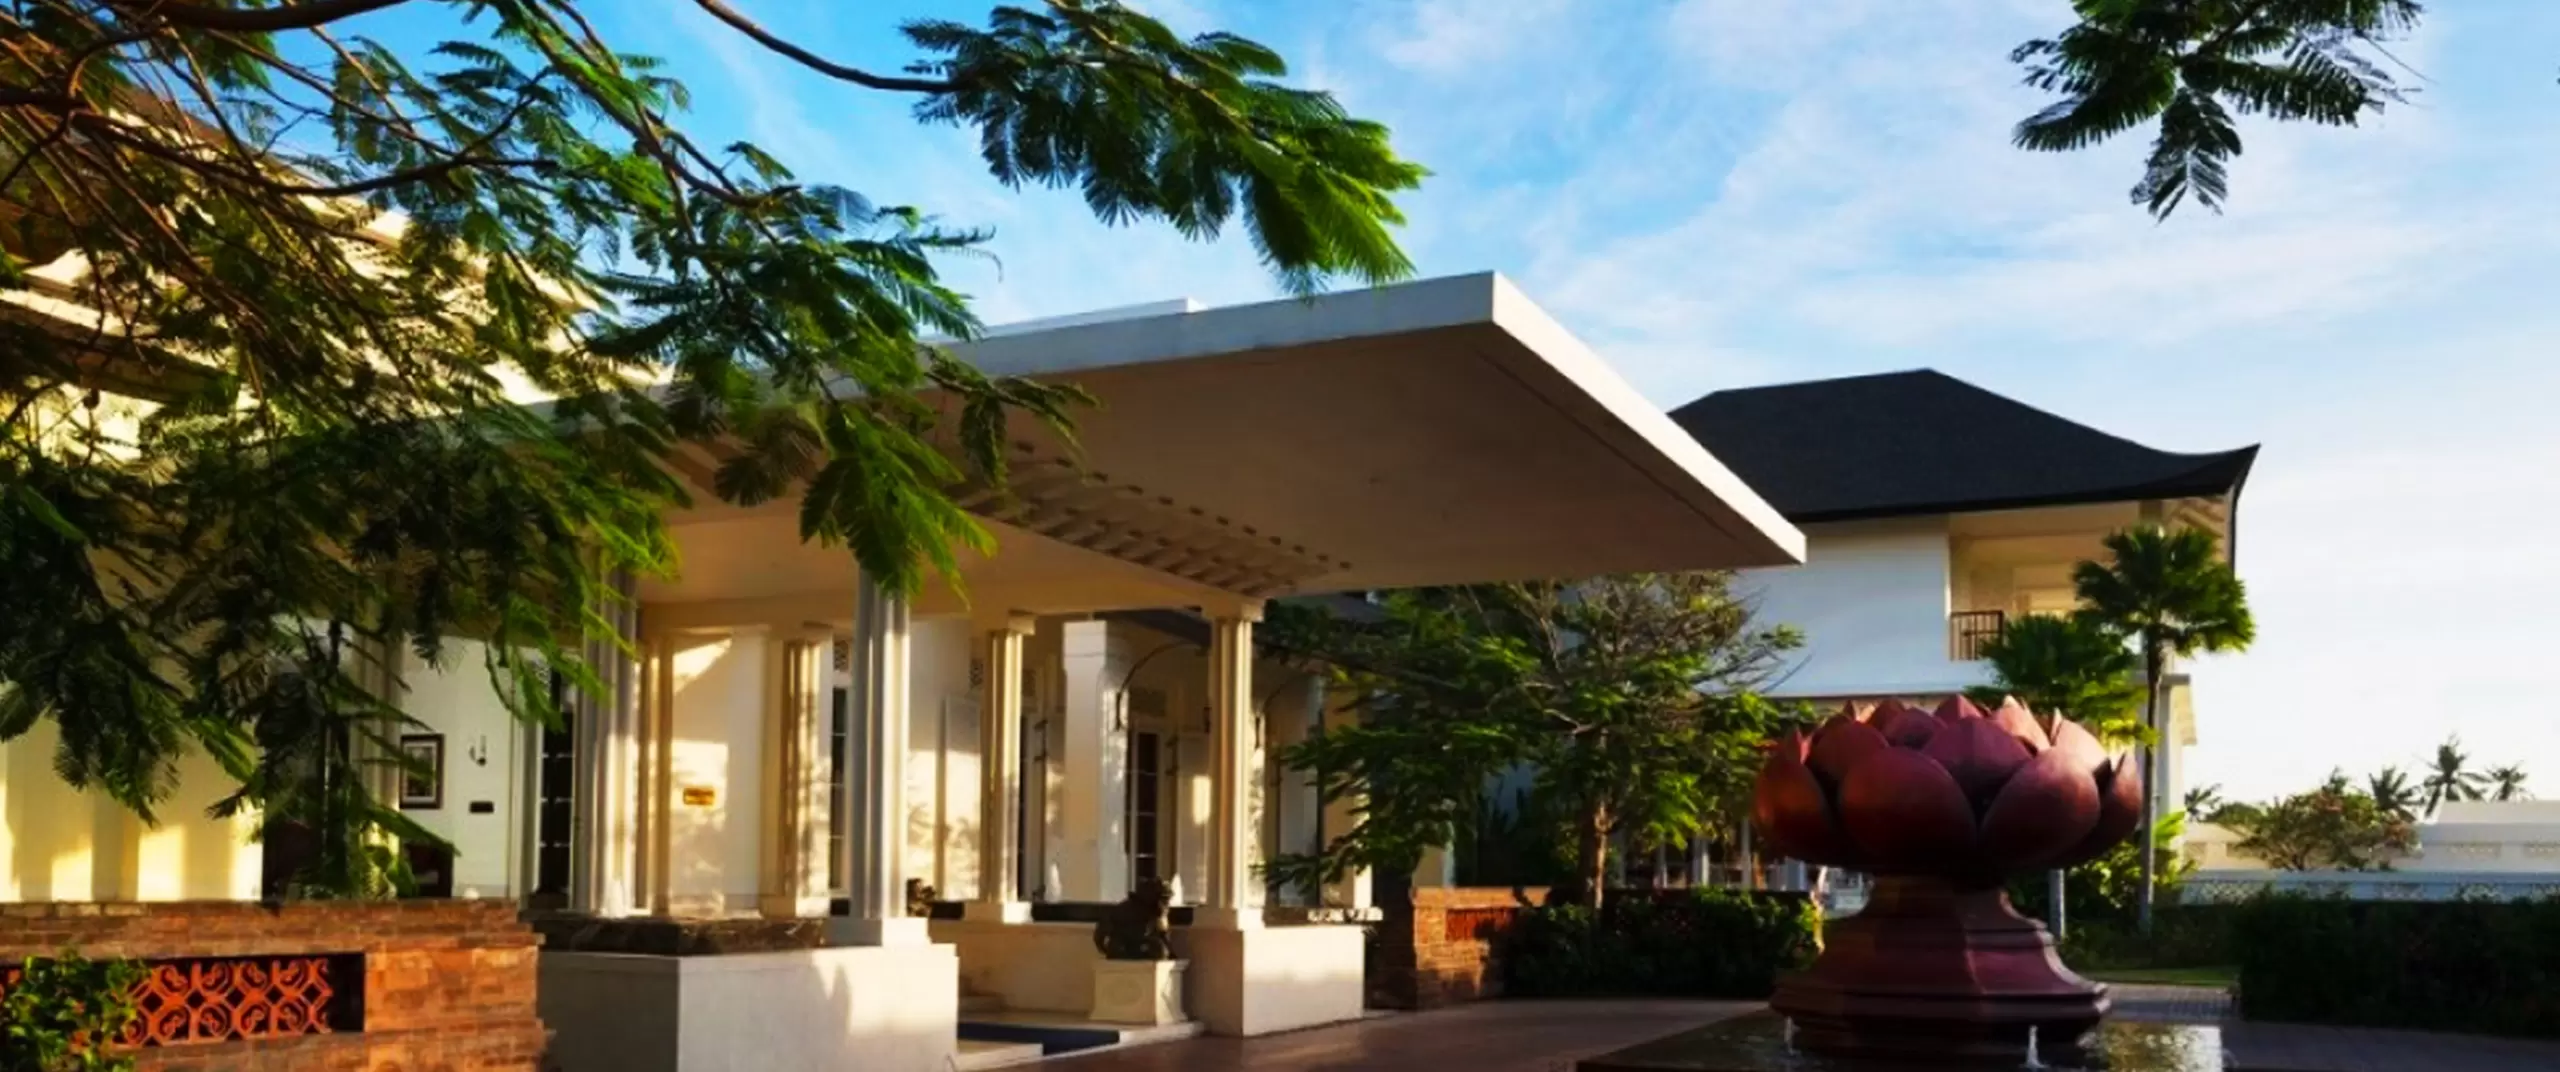 Rumah Luwih Special Offer - Silent Bliss, Nyepi Retreat at Rumah Luwih Bali